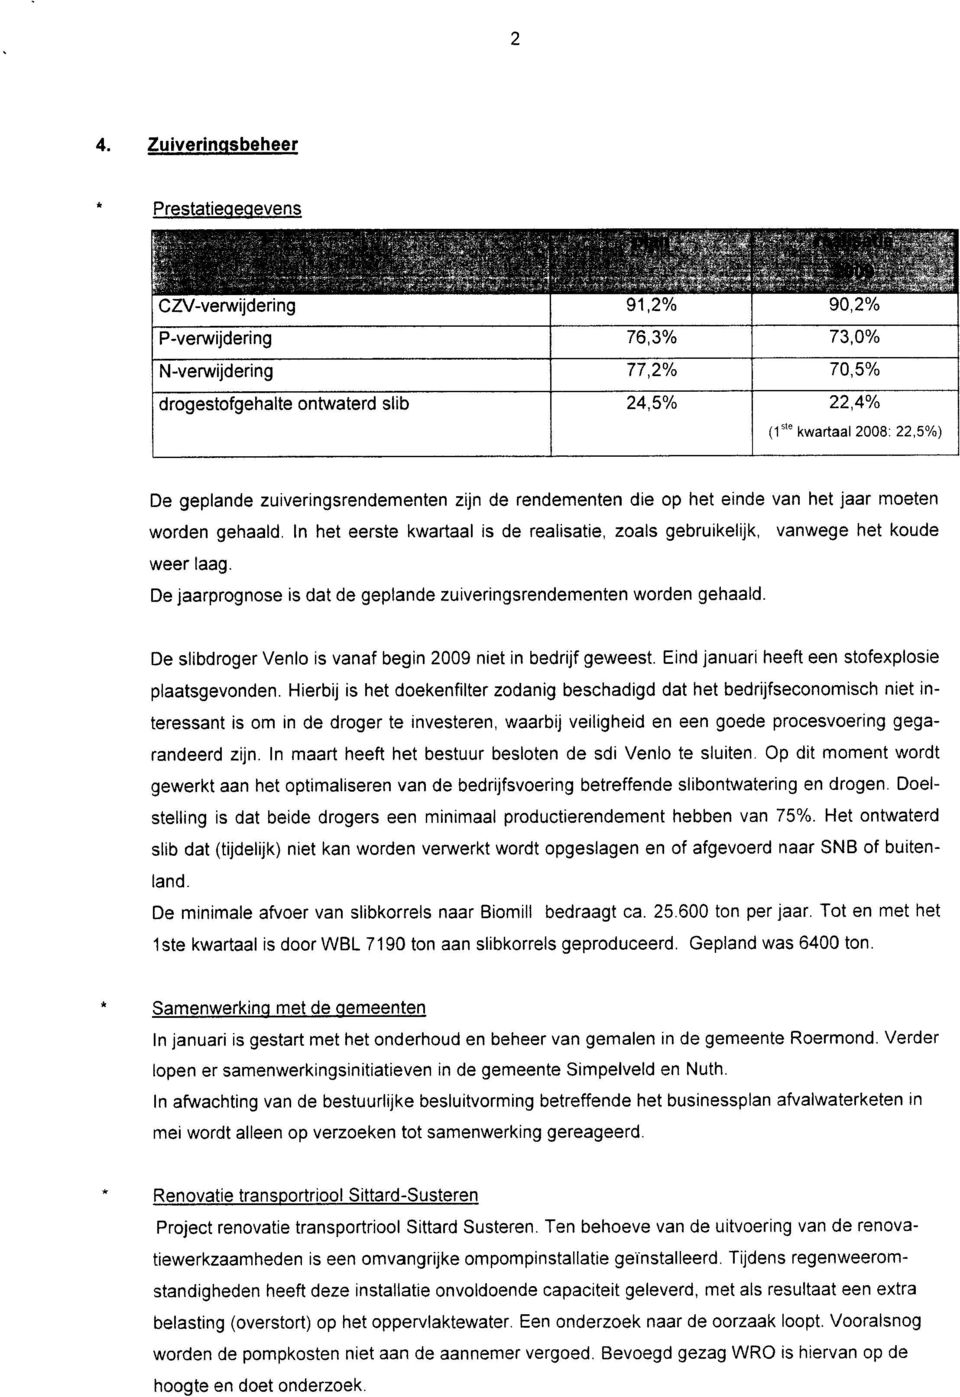 De jaarprognose is dat de geplande zuiveringsrendementen worden gehaald. De slibdroger Venlo is vanaf begin 2009 niet in bedrijf geweest. Eind januari heeft een stofexplosie plaatsgevonden.